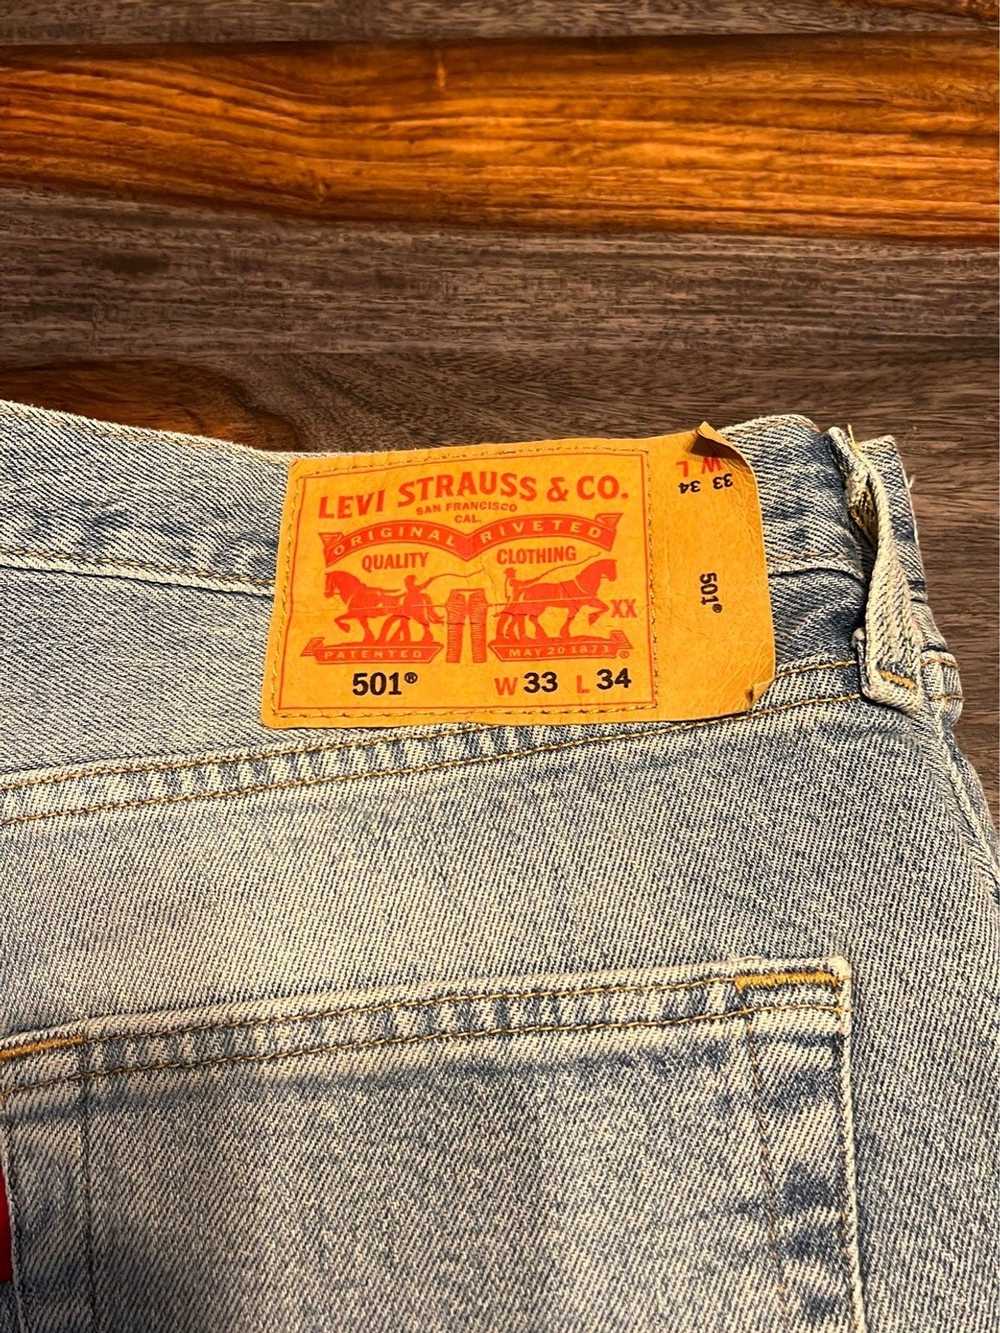 Levi's Levi's 501 Jeans - image 2